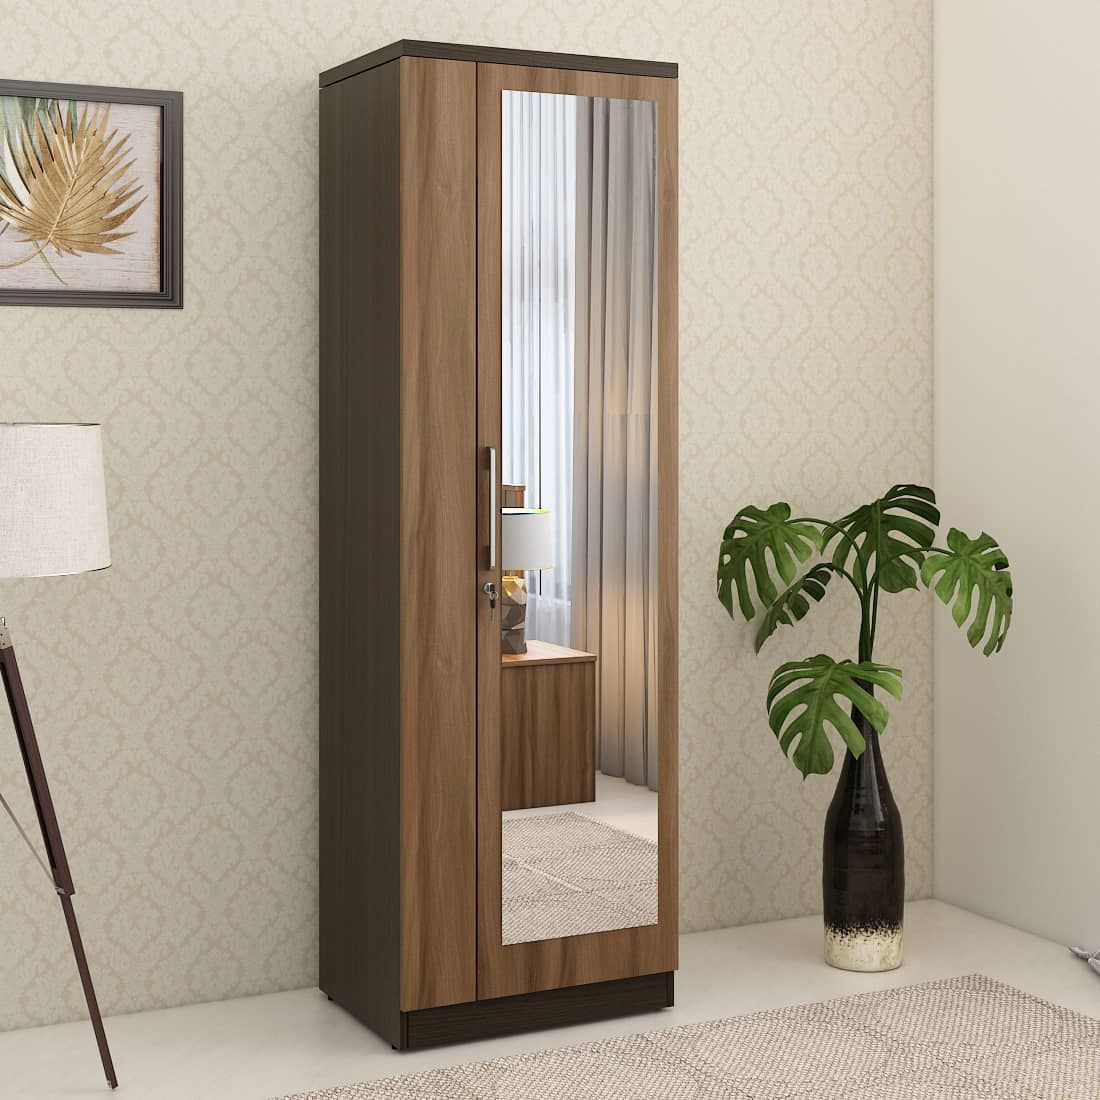 Kosmo Ken 1 Door Wardrobe With Mirror Walnut Bronze Woodpore | Spacewood  Ecommerce Pertaining To 1 Door Mirrored Wardrobes (Photo 3 of 15)